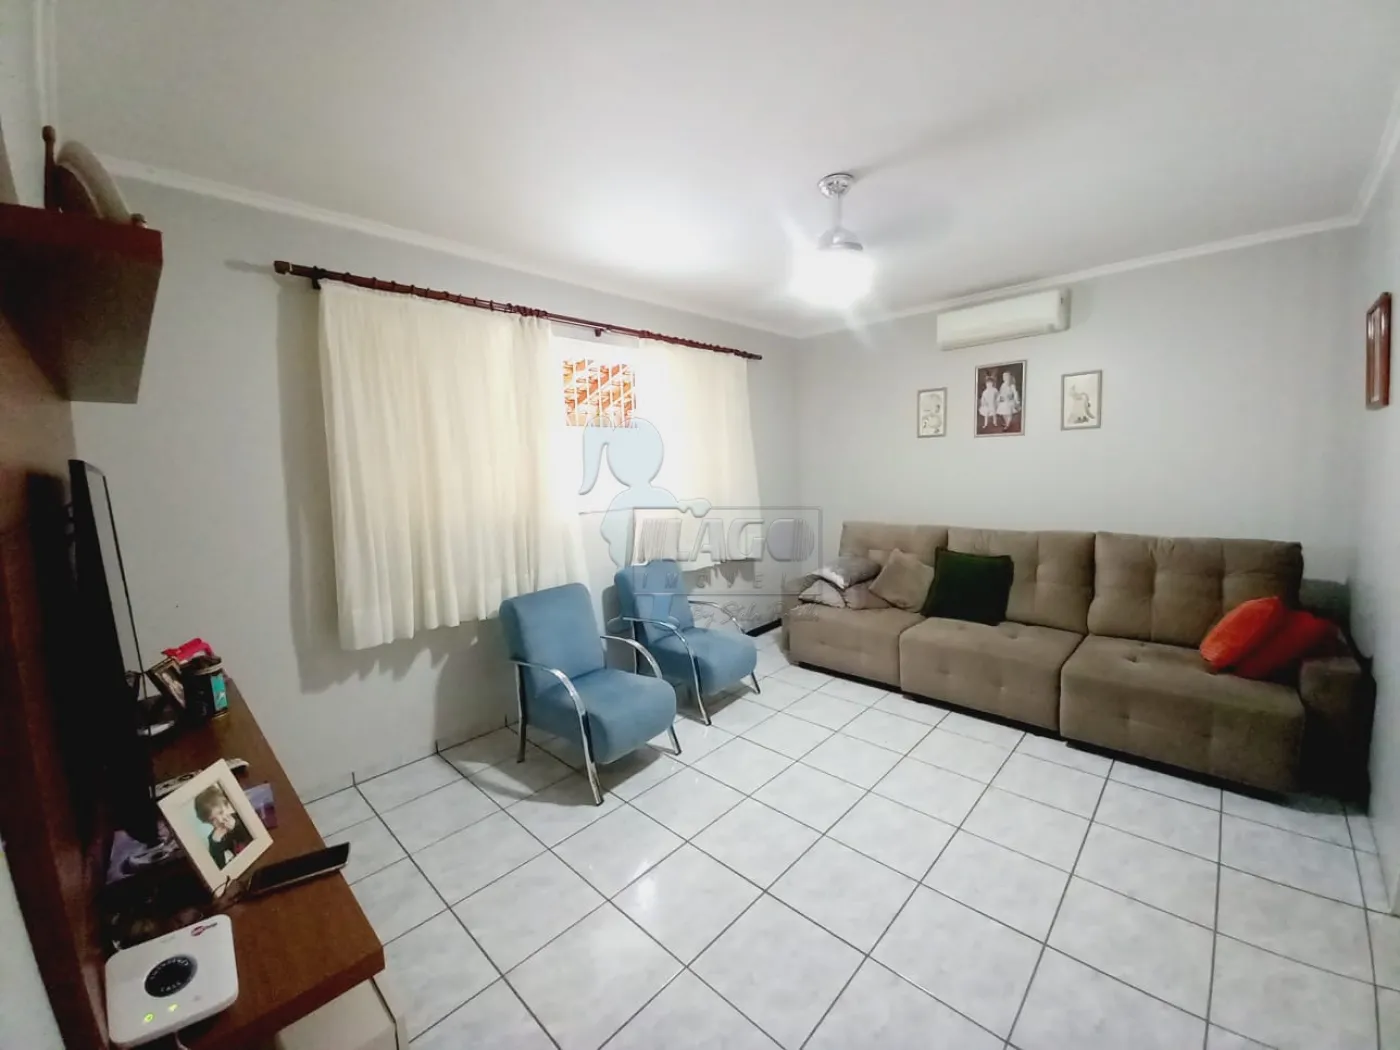 Comprar Casa / Padrão em Ribeirão Preto R$ 446.000,00 - Foto 8